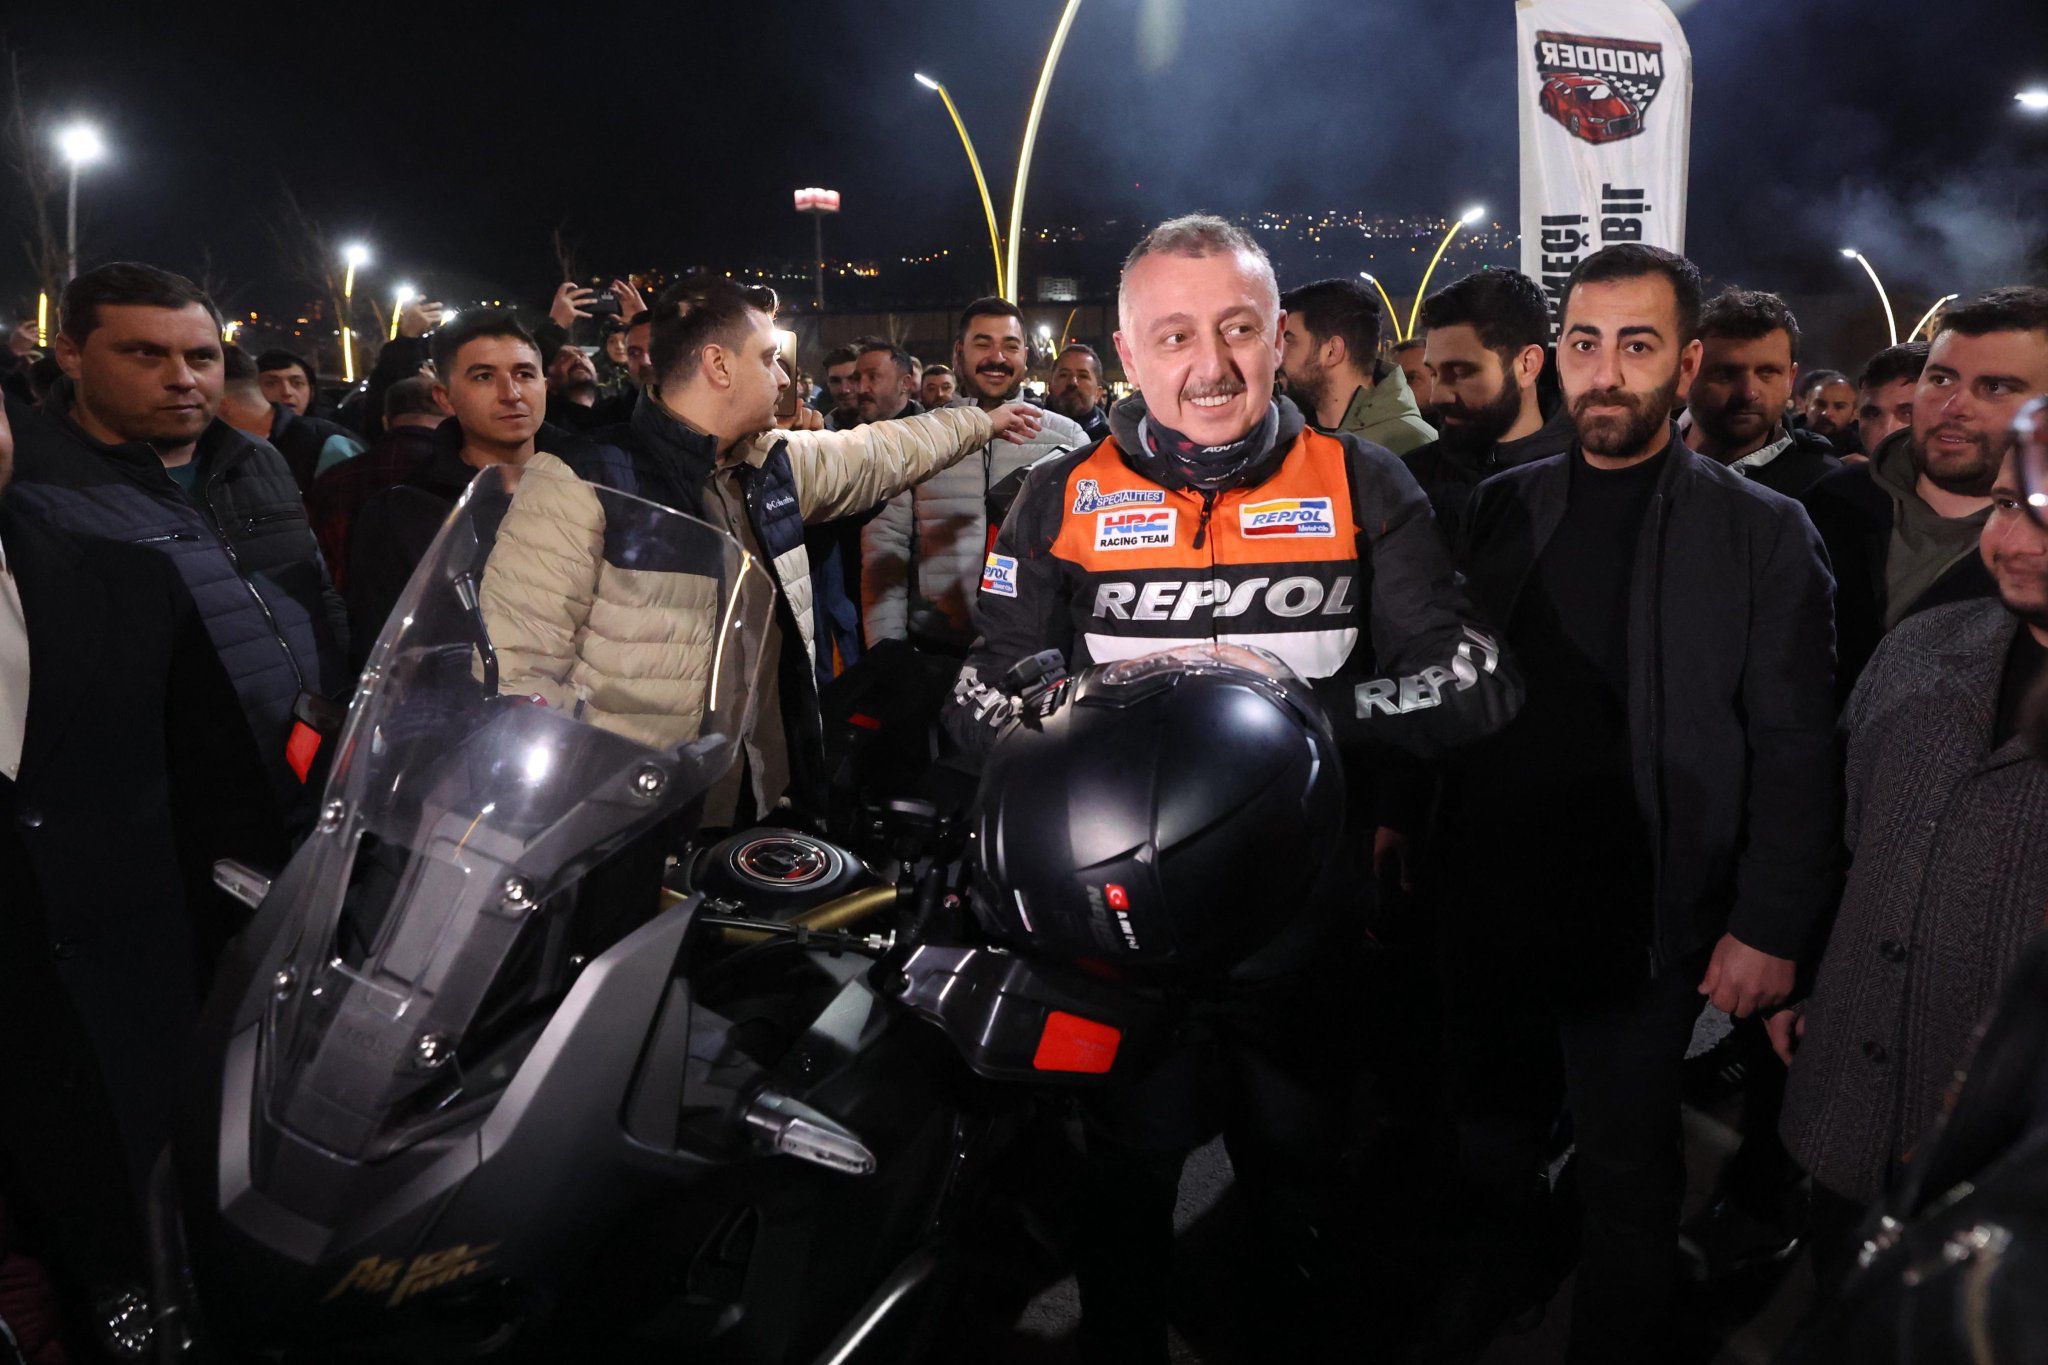 Kocaeli Büyükşehir Belediye Başkanı Büyükakın, gençlerle motosiklet kullandı